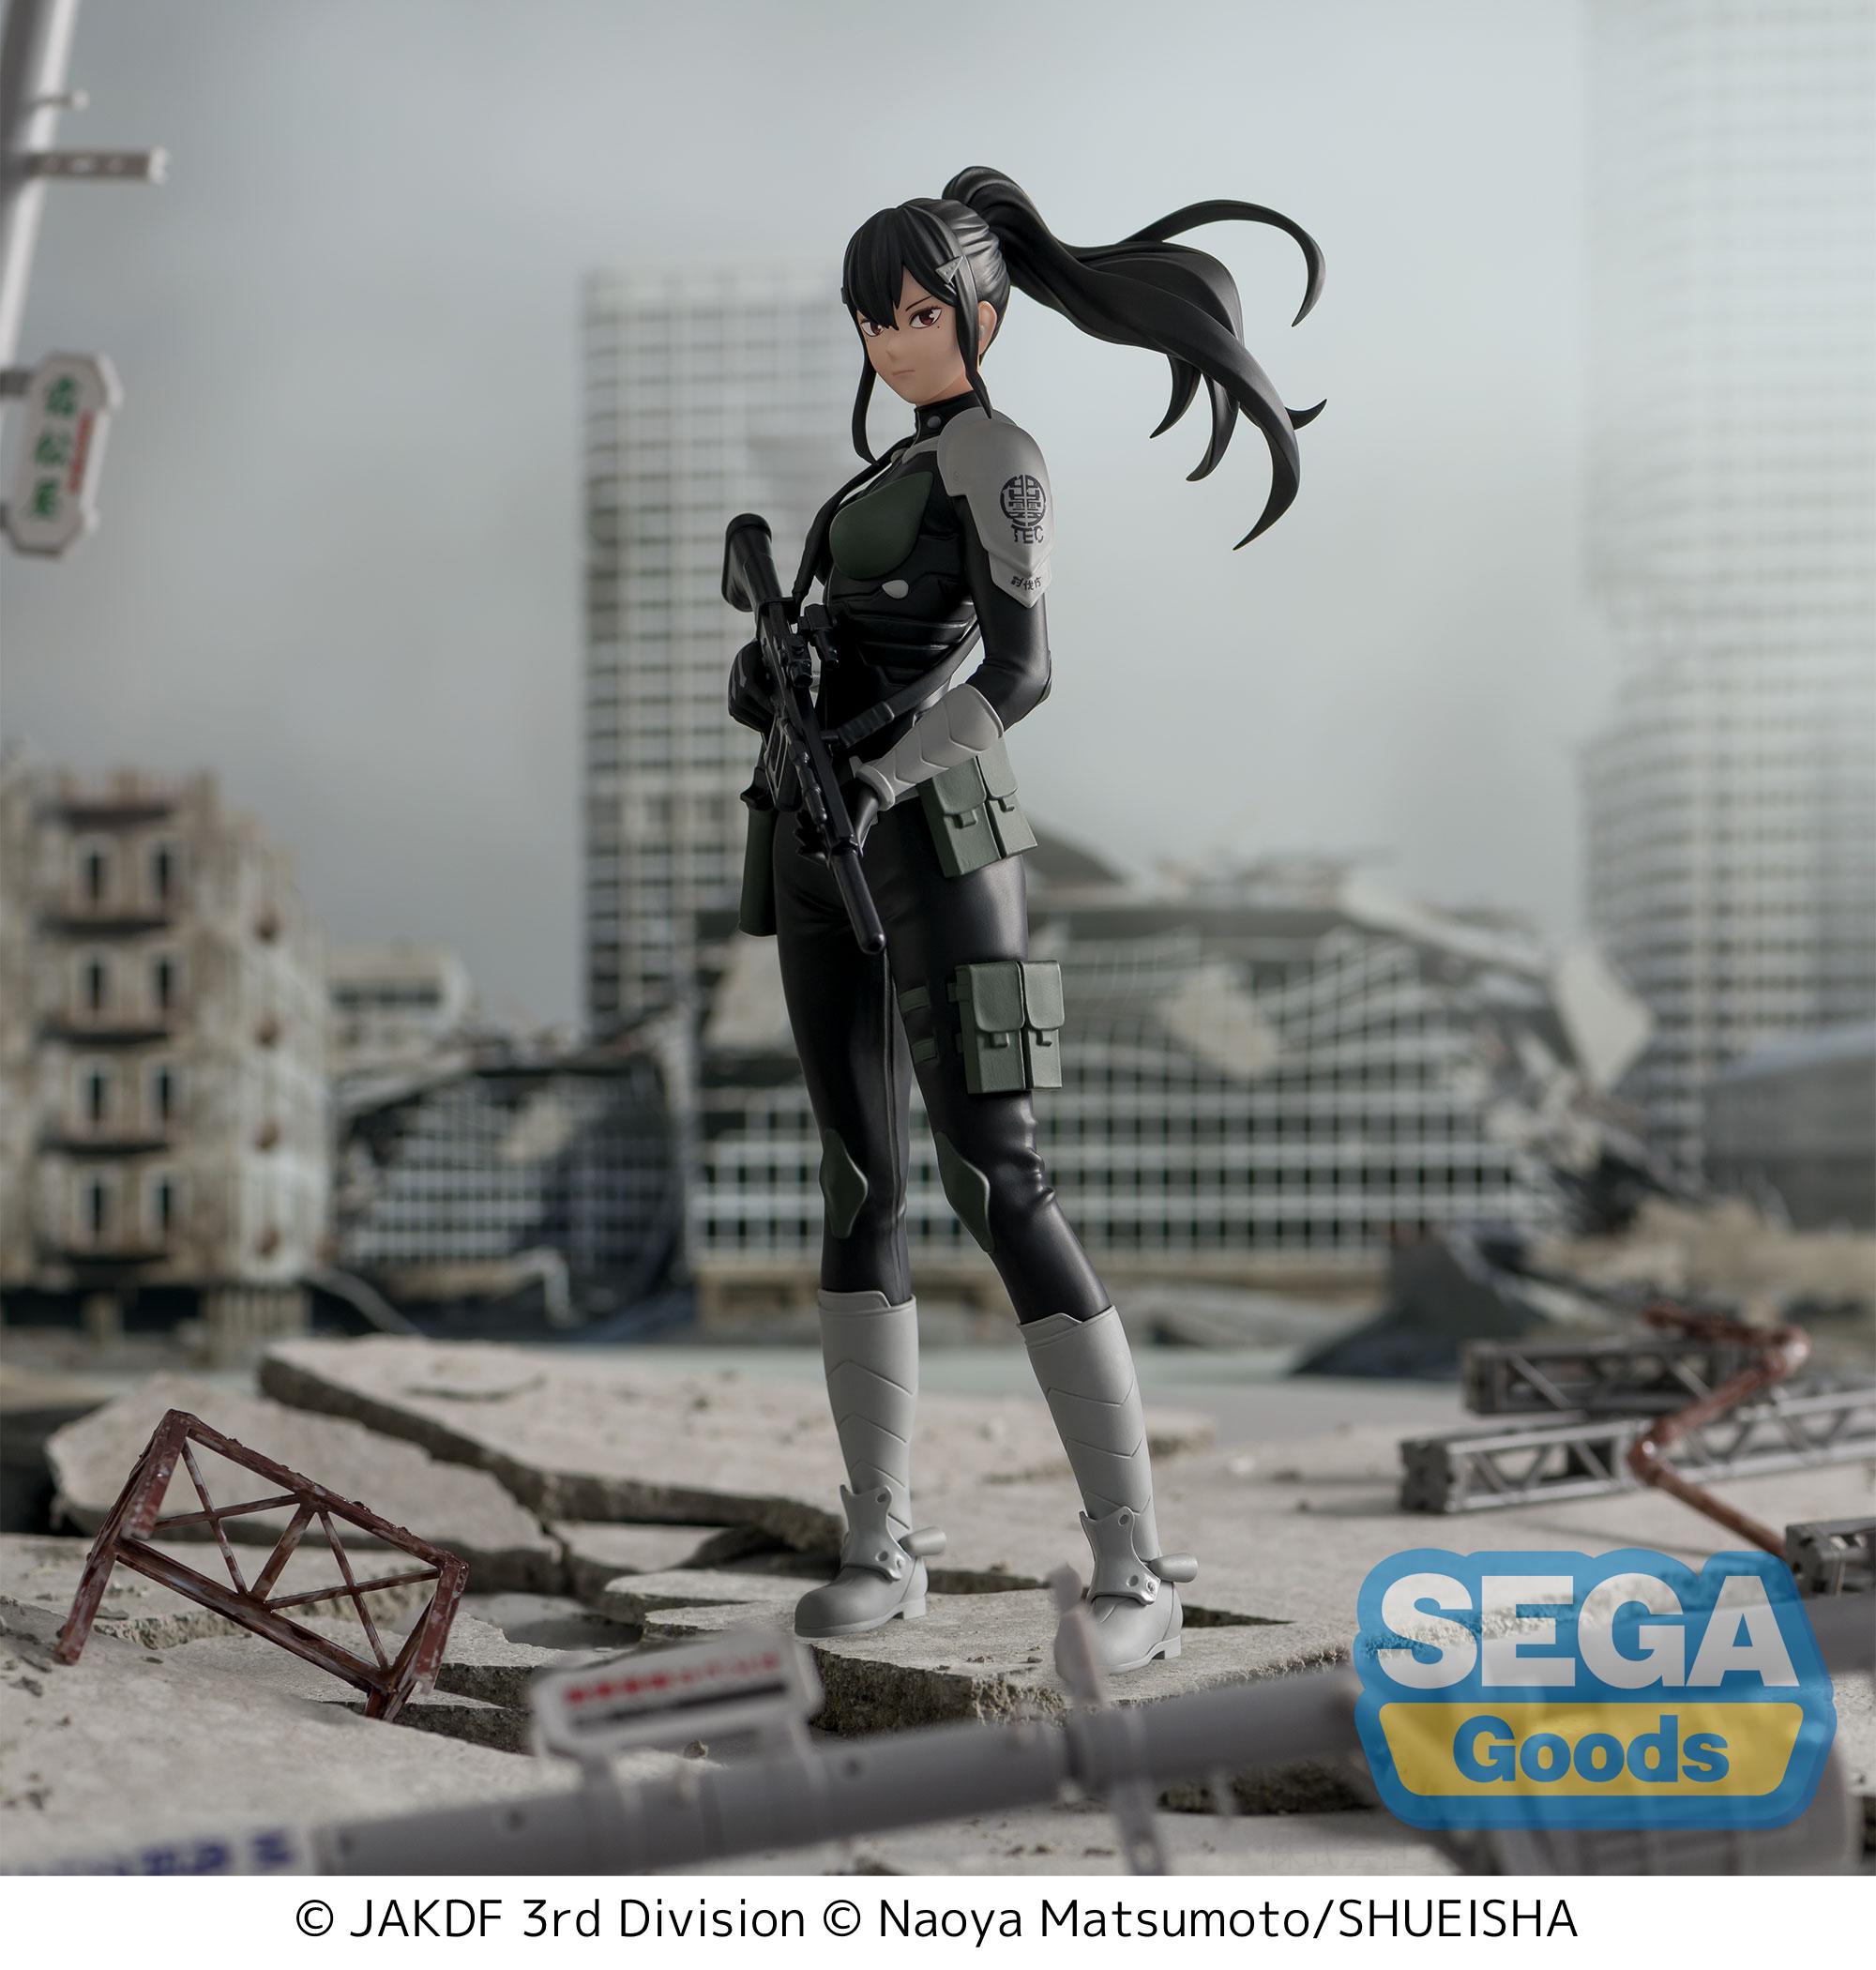 Sega Figures Luminasta: Kaiju No 8 - Mina Ashiro